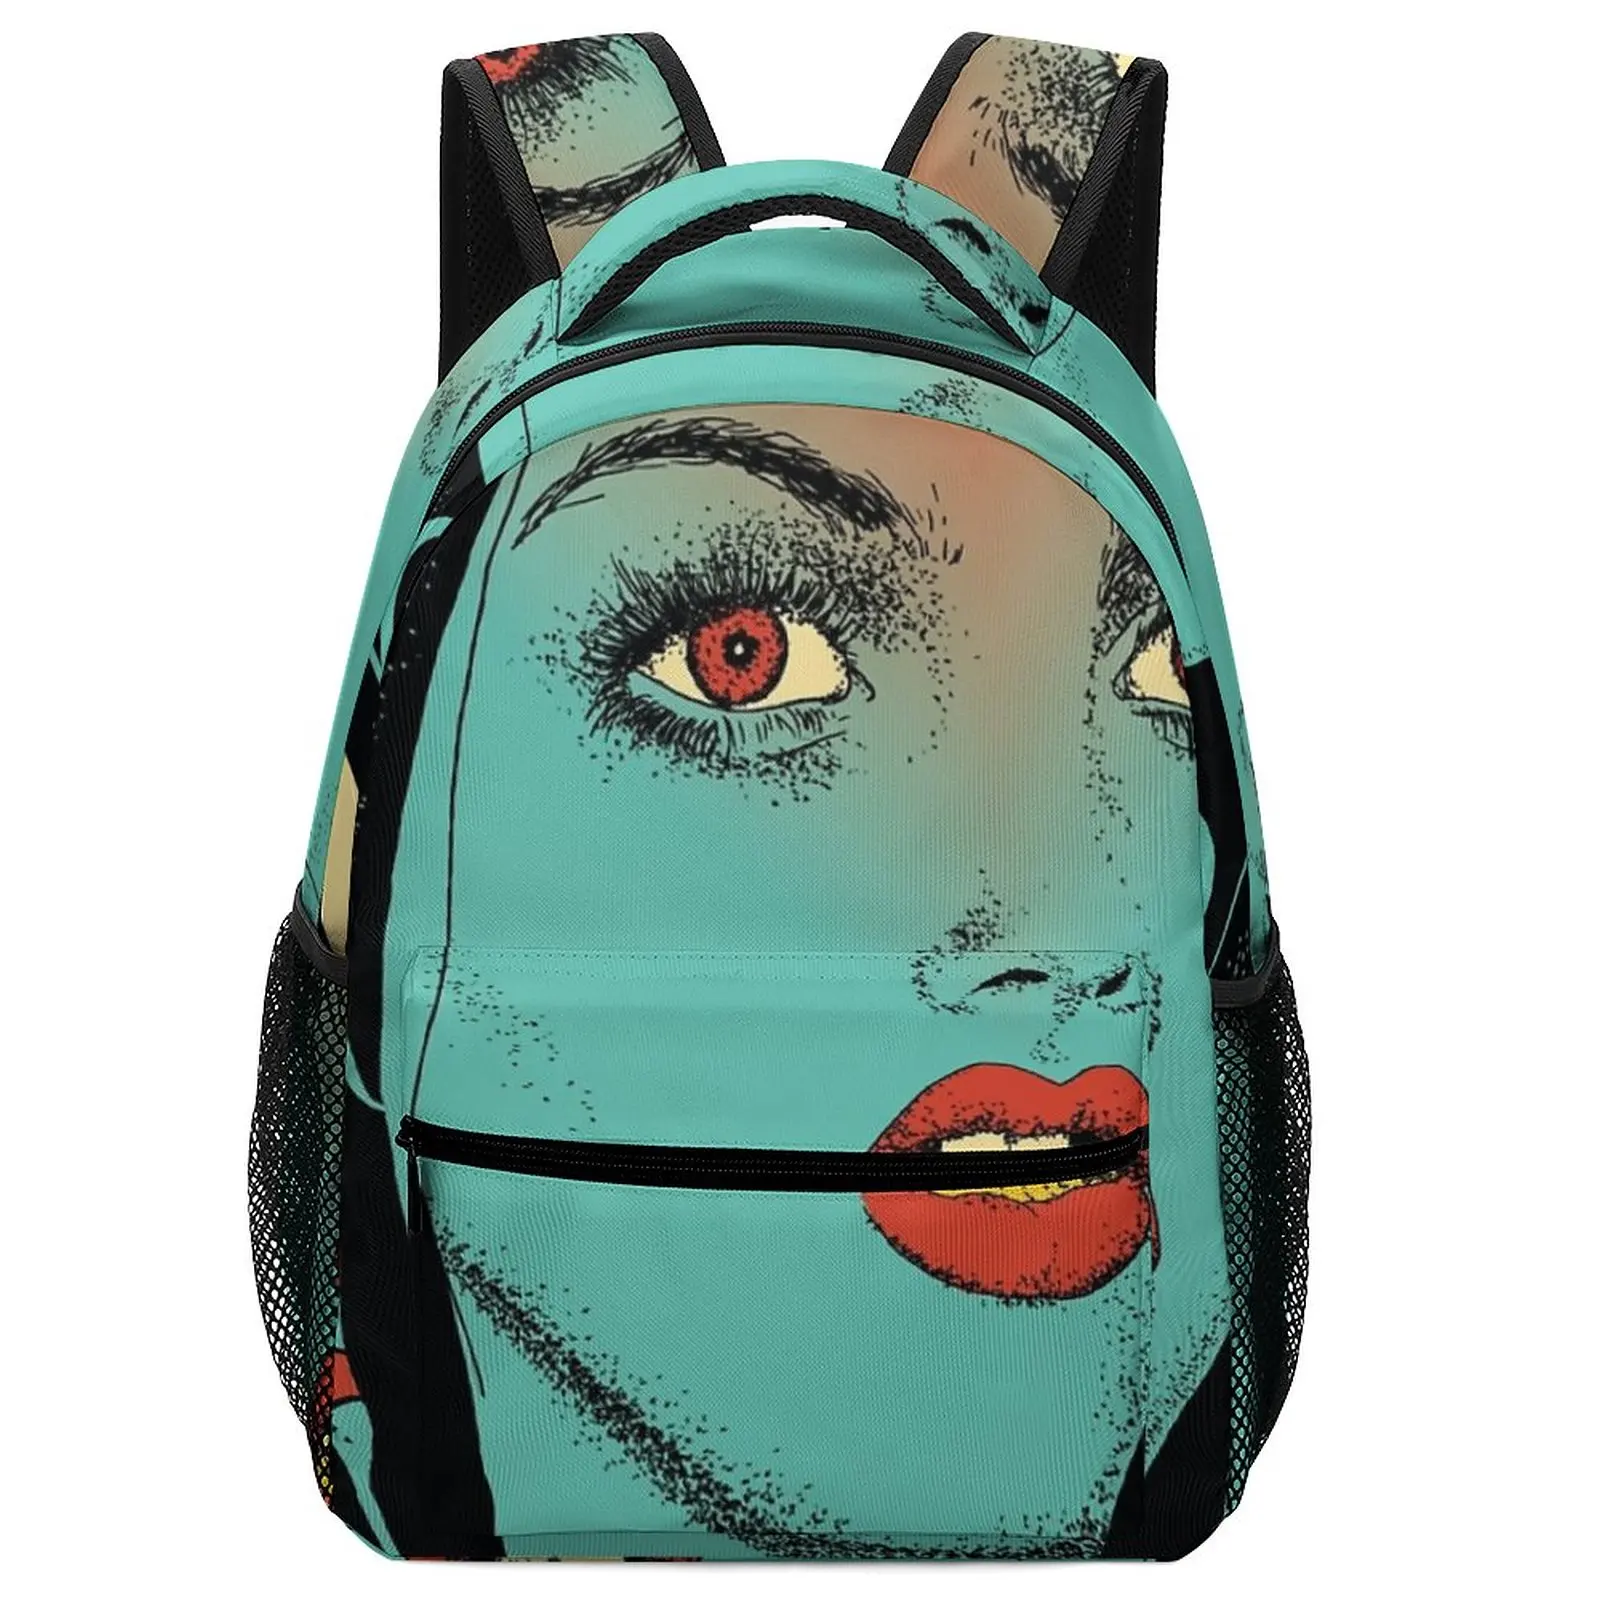 2022 New Art Diviniation Schoolbag for Kids Girls Women School Bags Lttle Backpack For